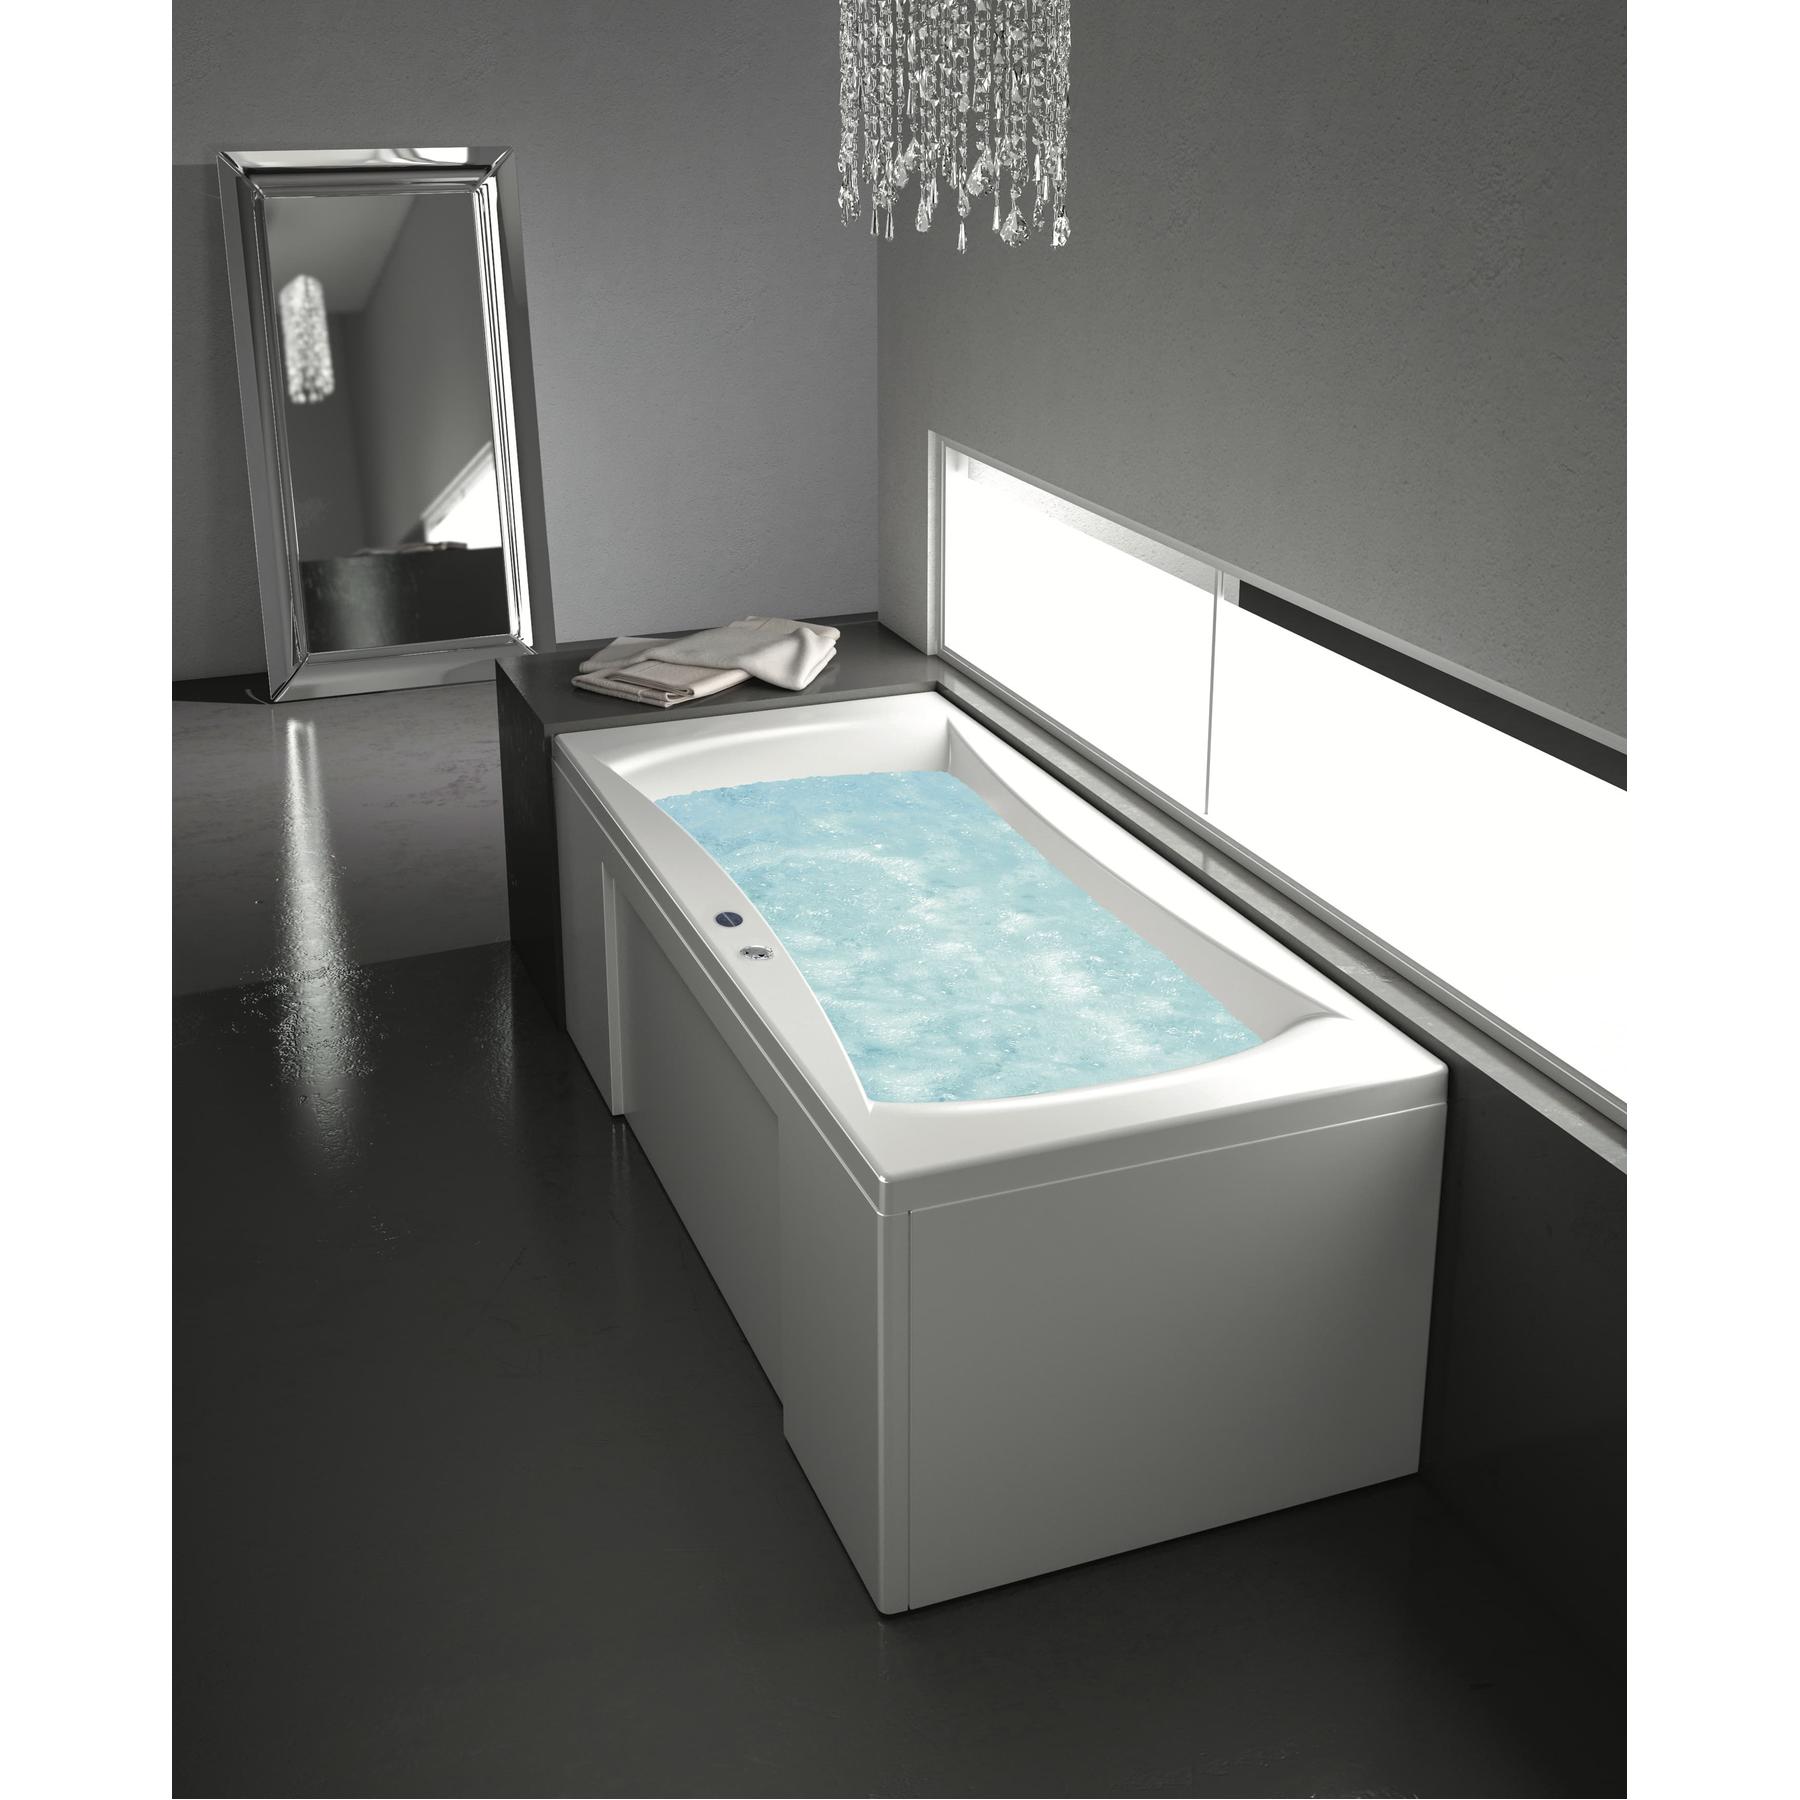 Façade de tablier en acrylique BIOCRYL 200 blanc compatible avec toutes les baignoires balnéos KINEDO système STAR MIXTE DIGIT